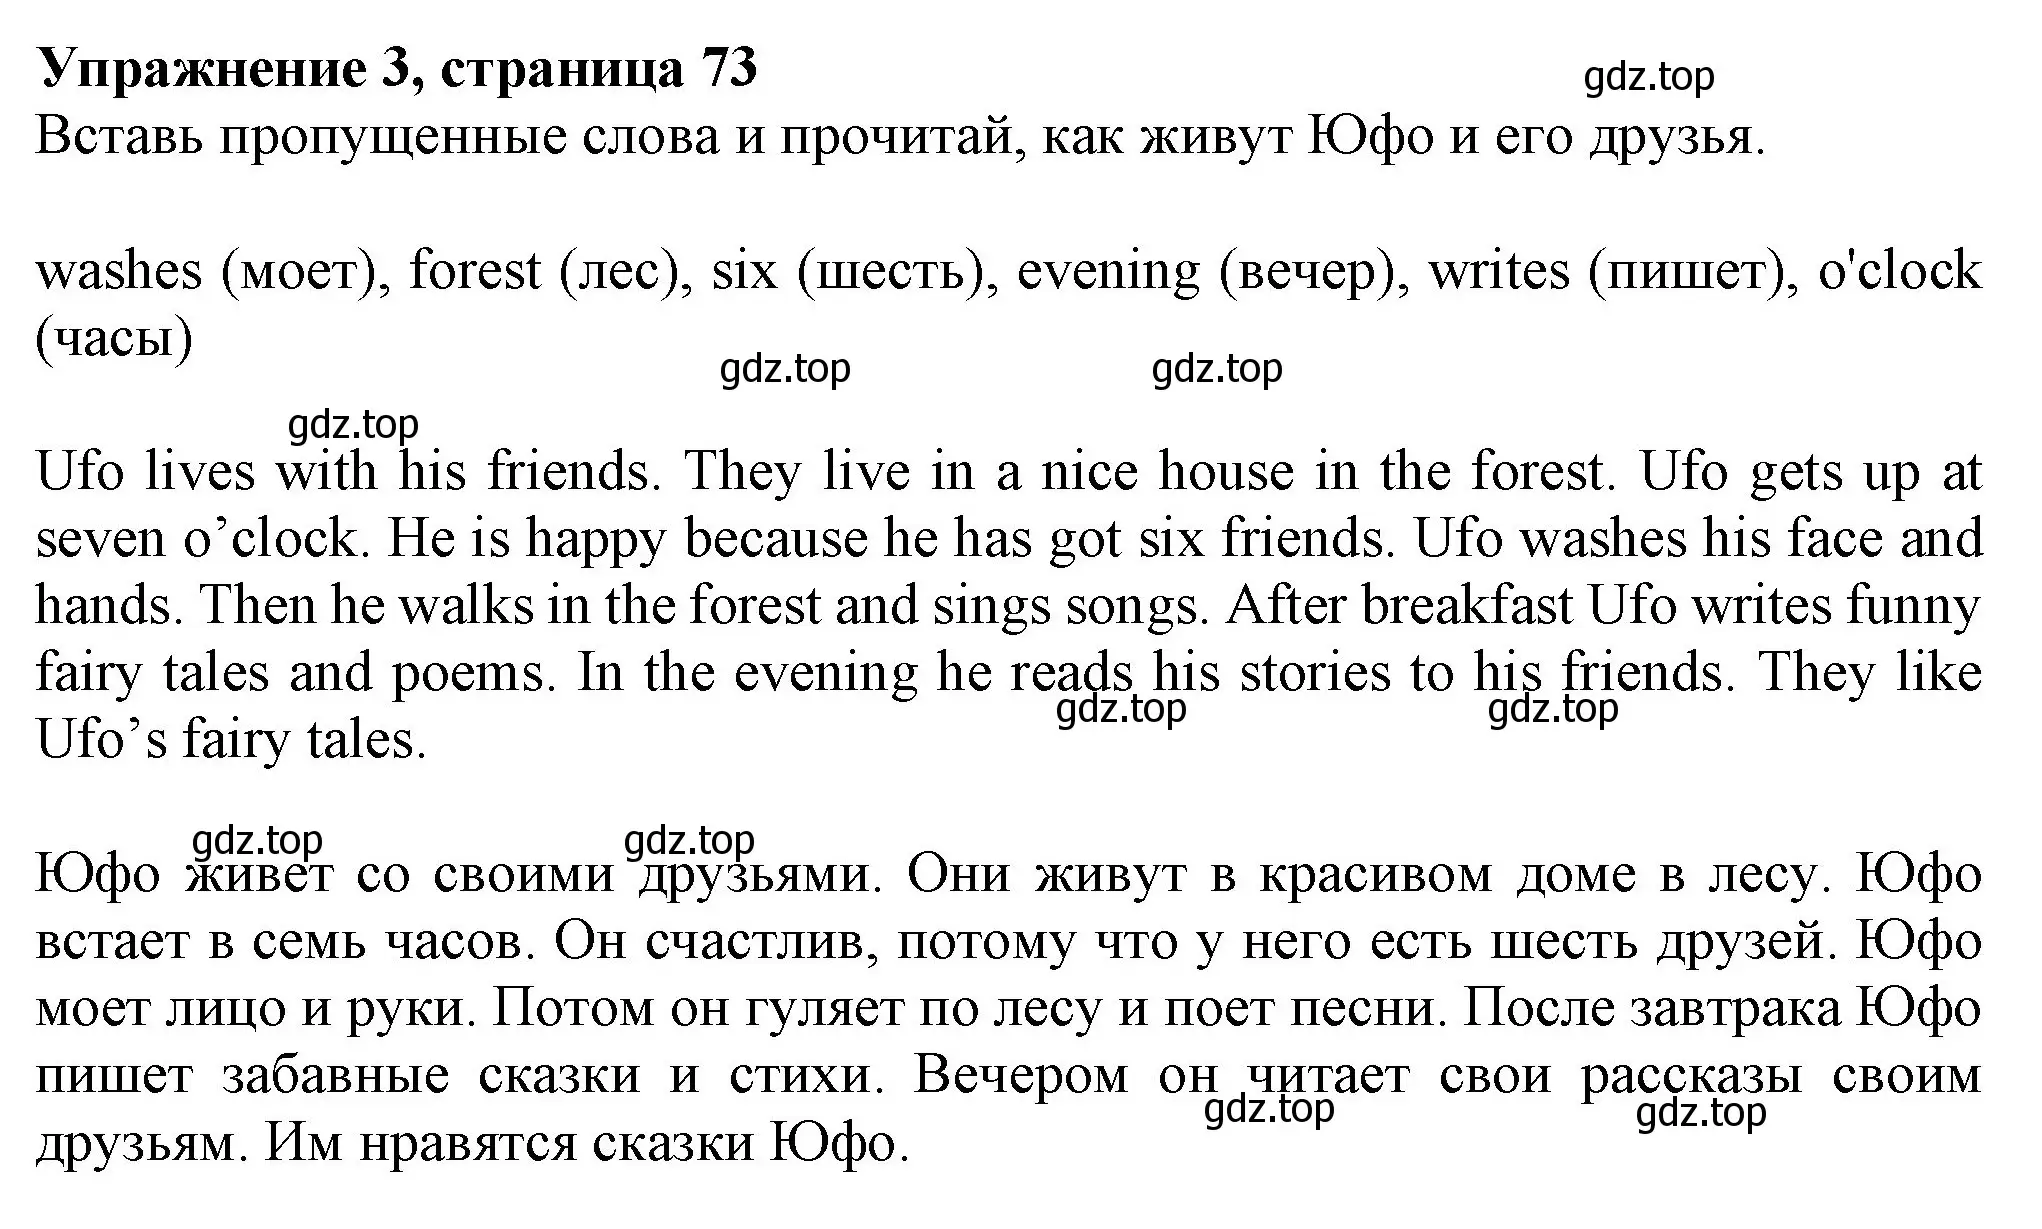 Решение номер 3 (страница 73) гдз по английскому языку 3 класс Биболетова, Денисенко, рабочая тетрадь